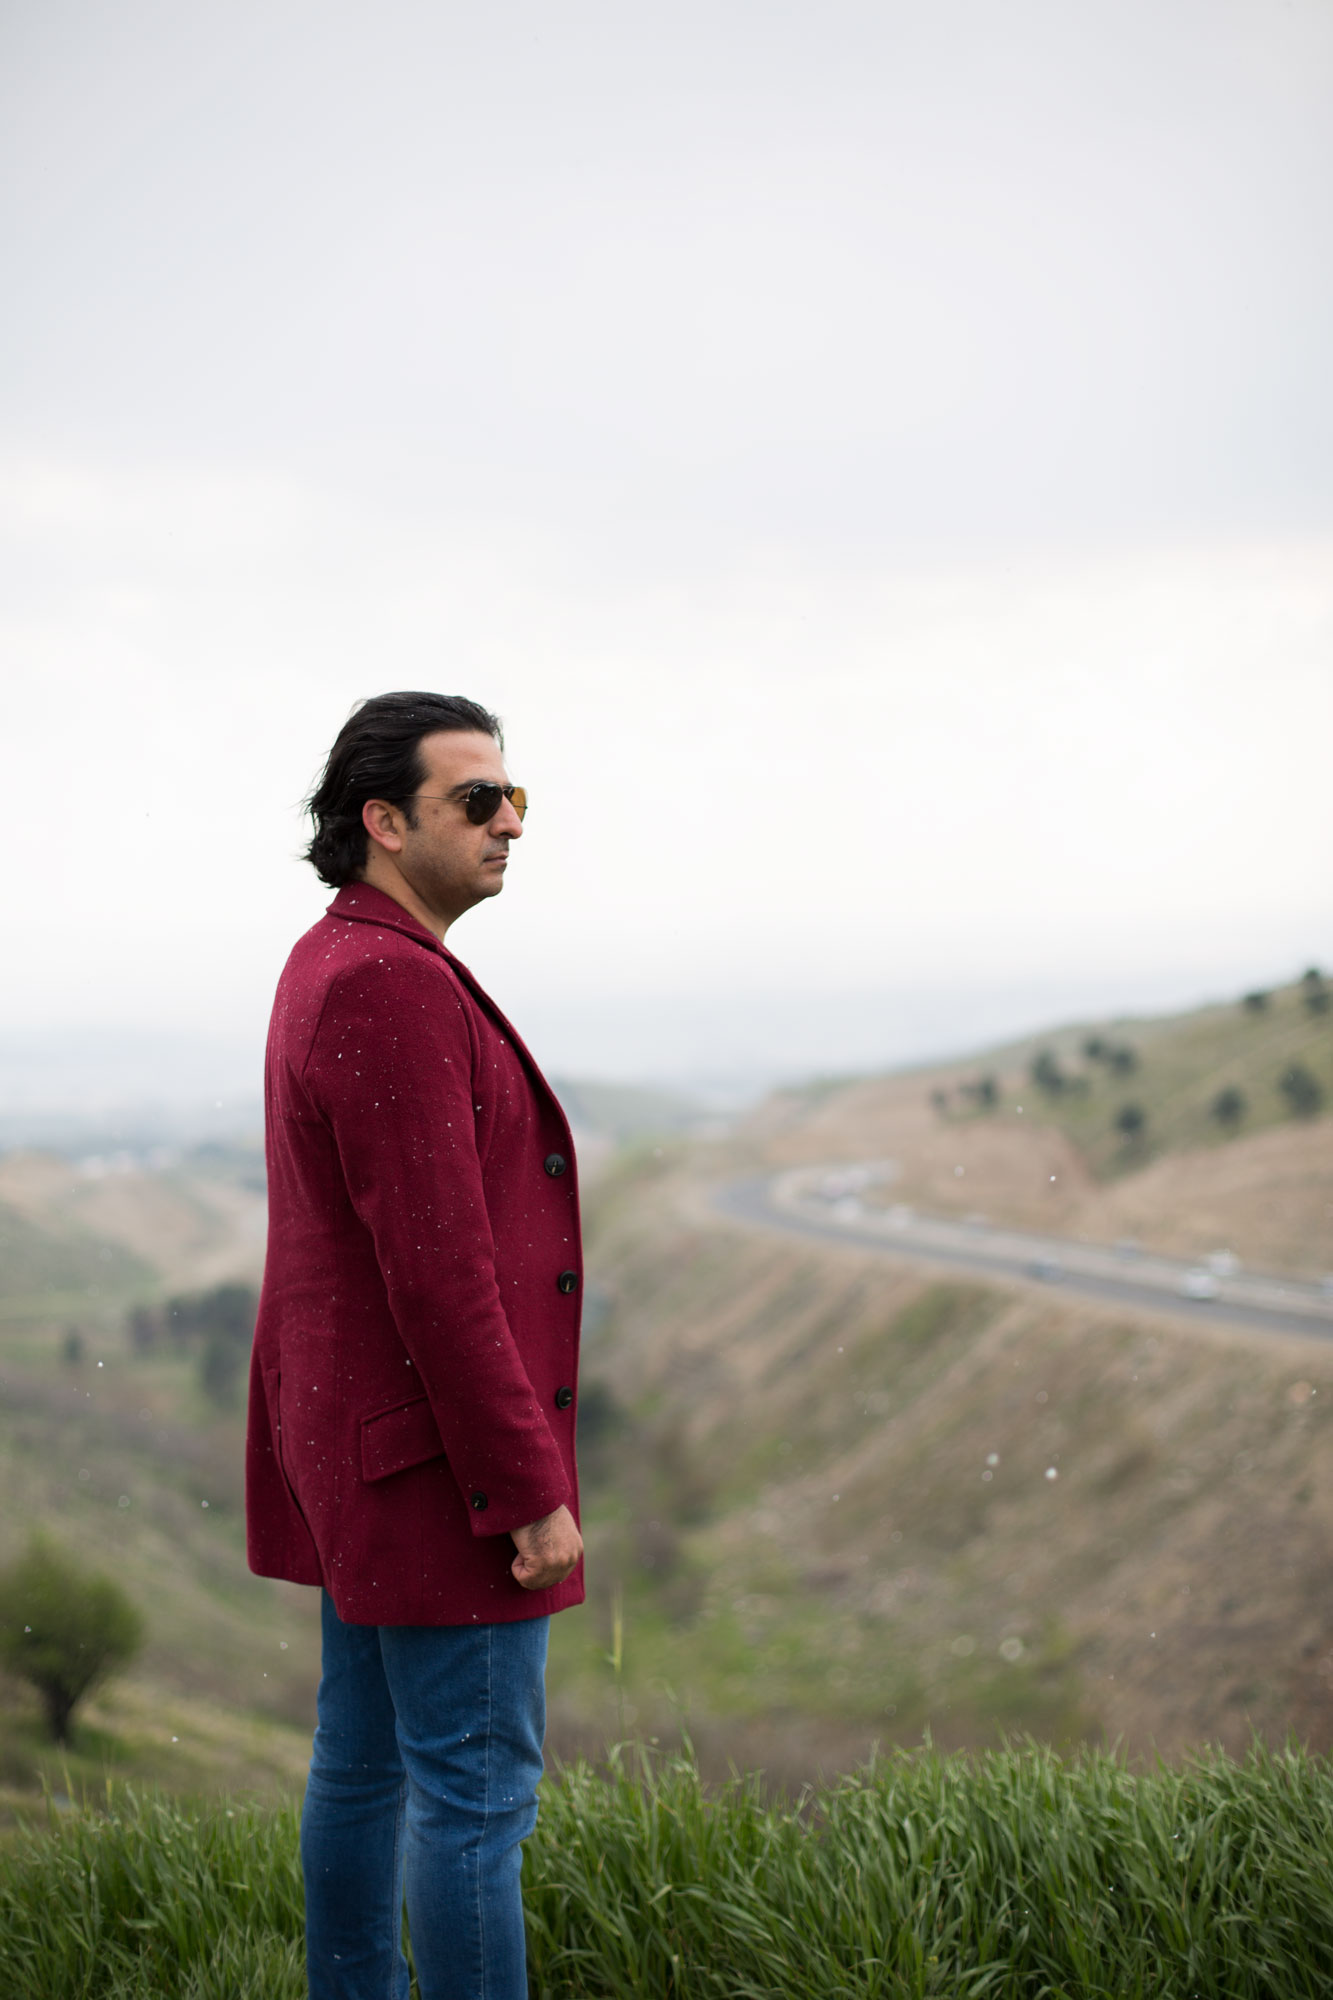 تصویری از علیرضا شیرین‌فرد، آهنگ ساز سینما و تلویزیون در حال بازیگری سر صحنه یکی از آثارش